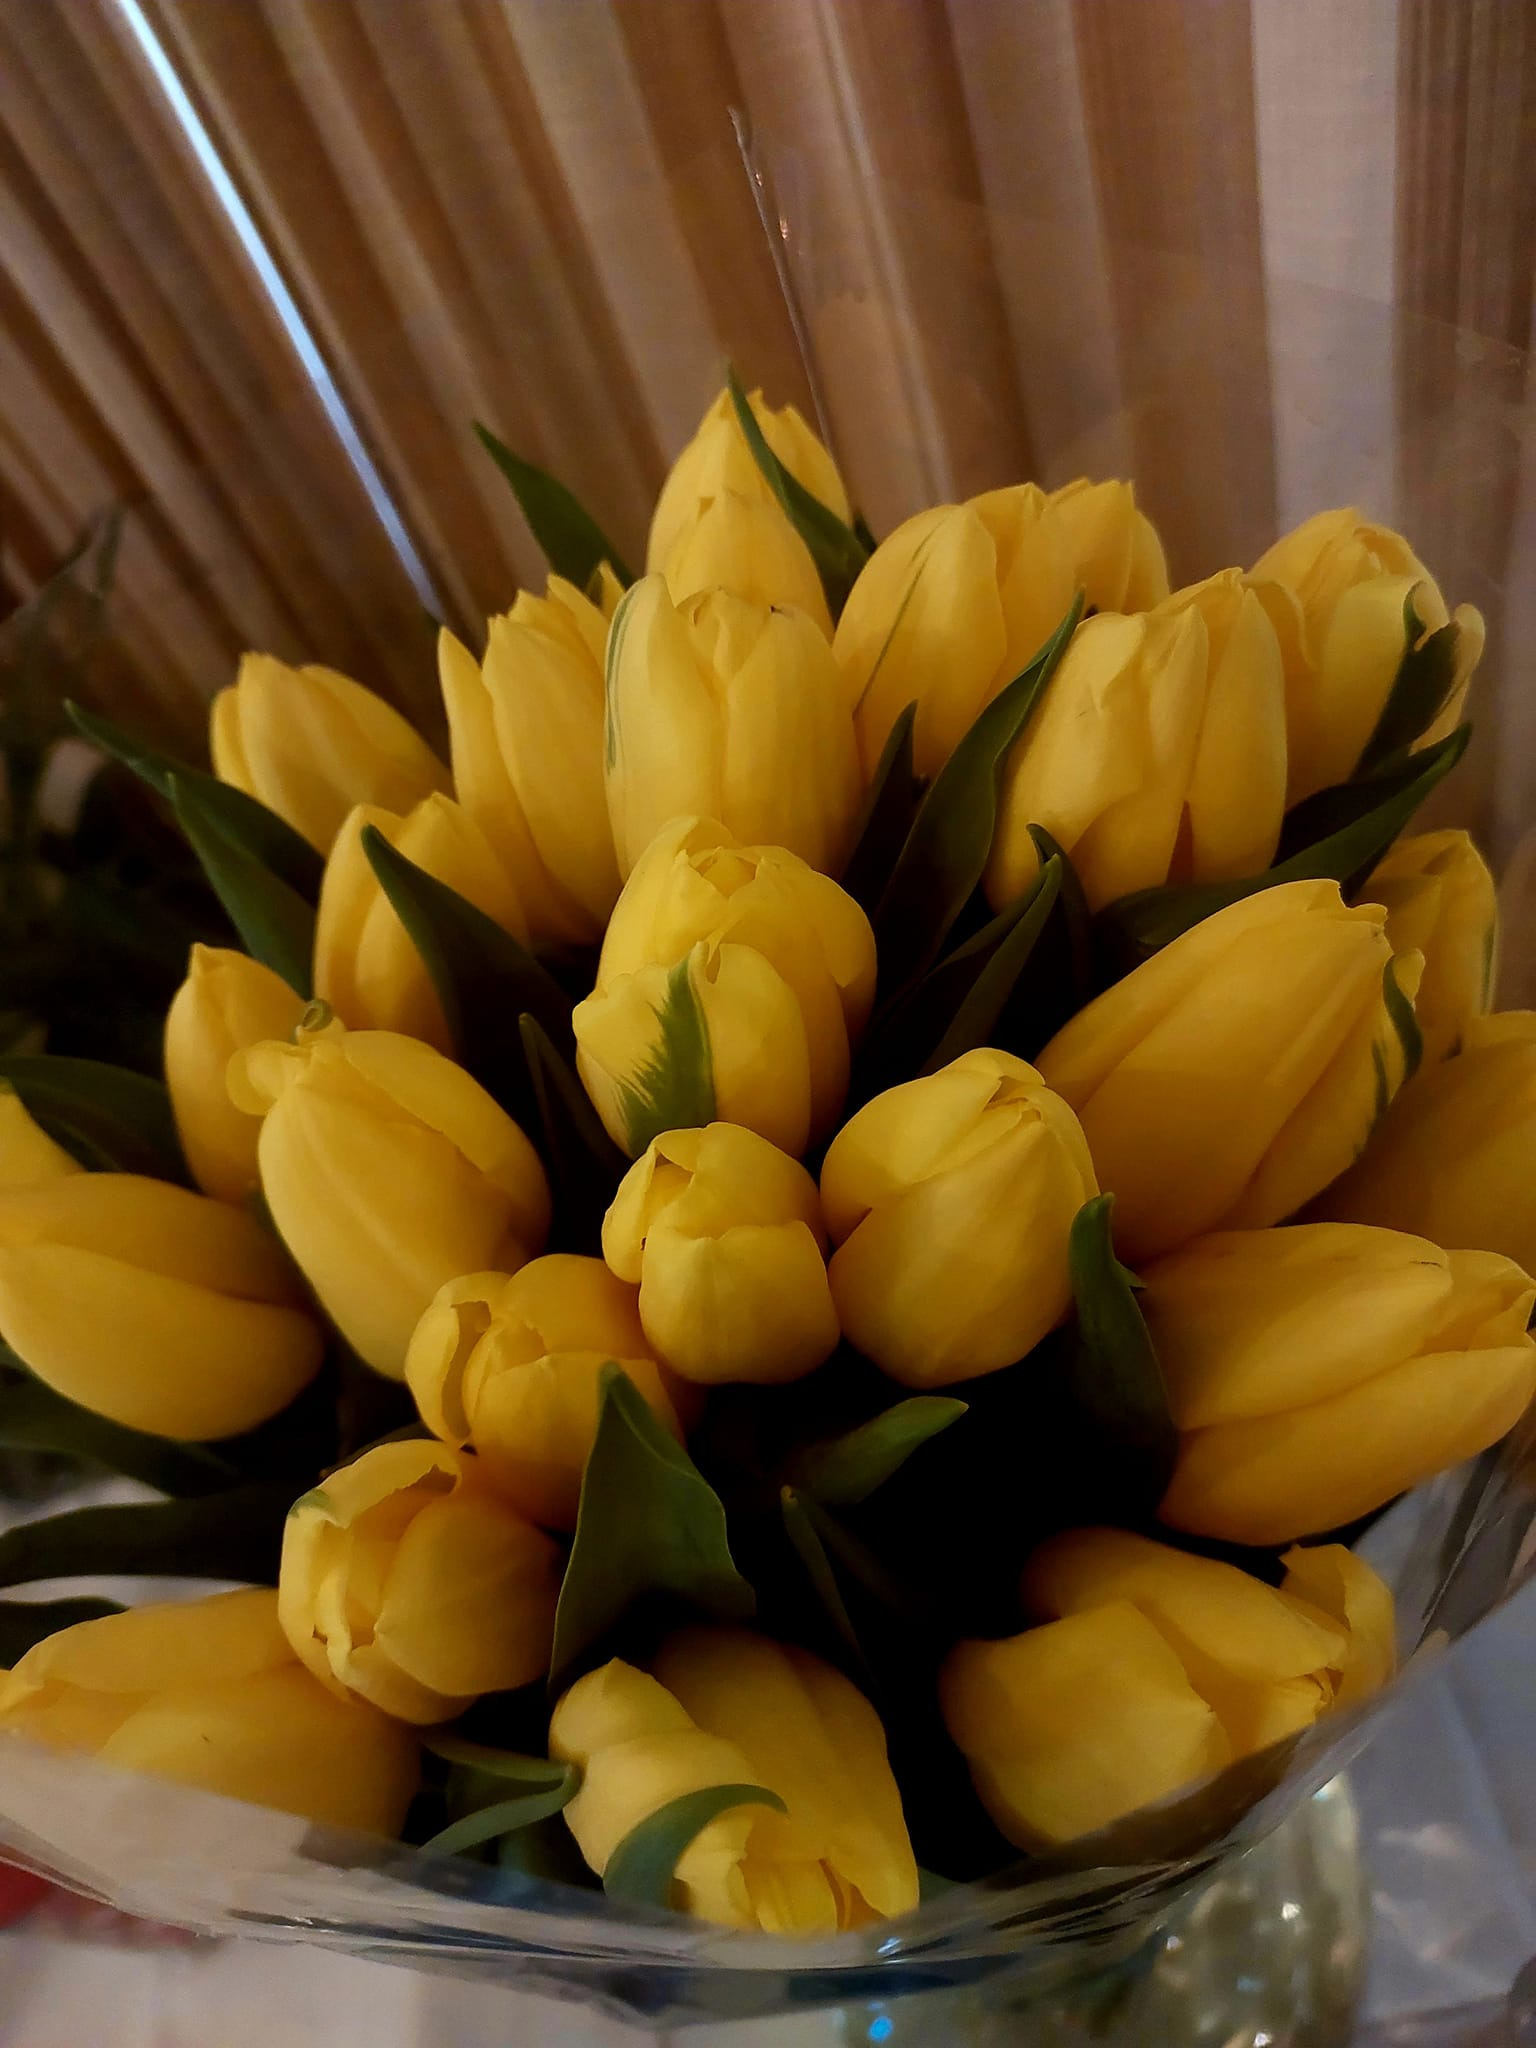 Bukiet tulipanów dla Autora zdjęć.